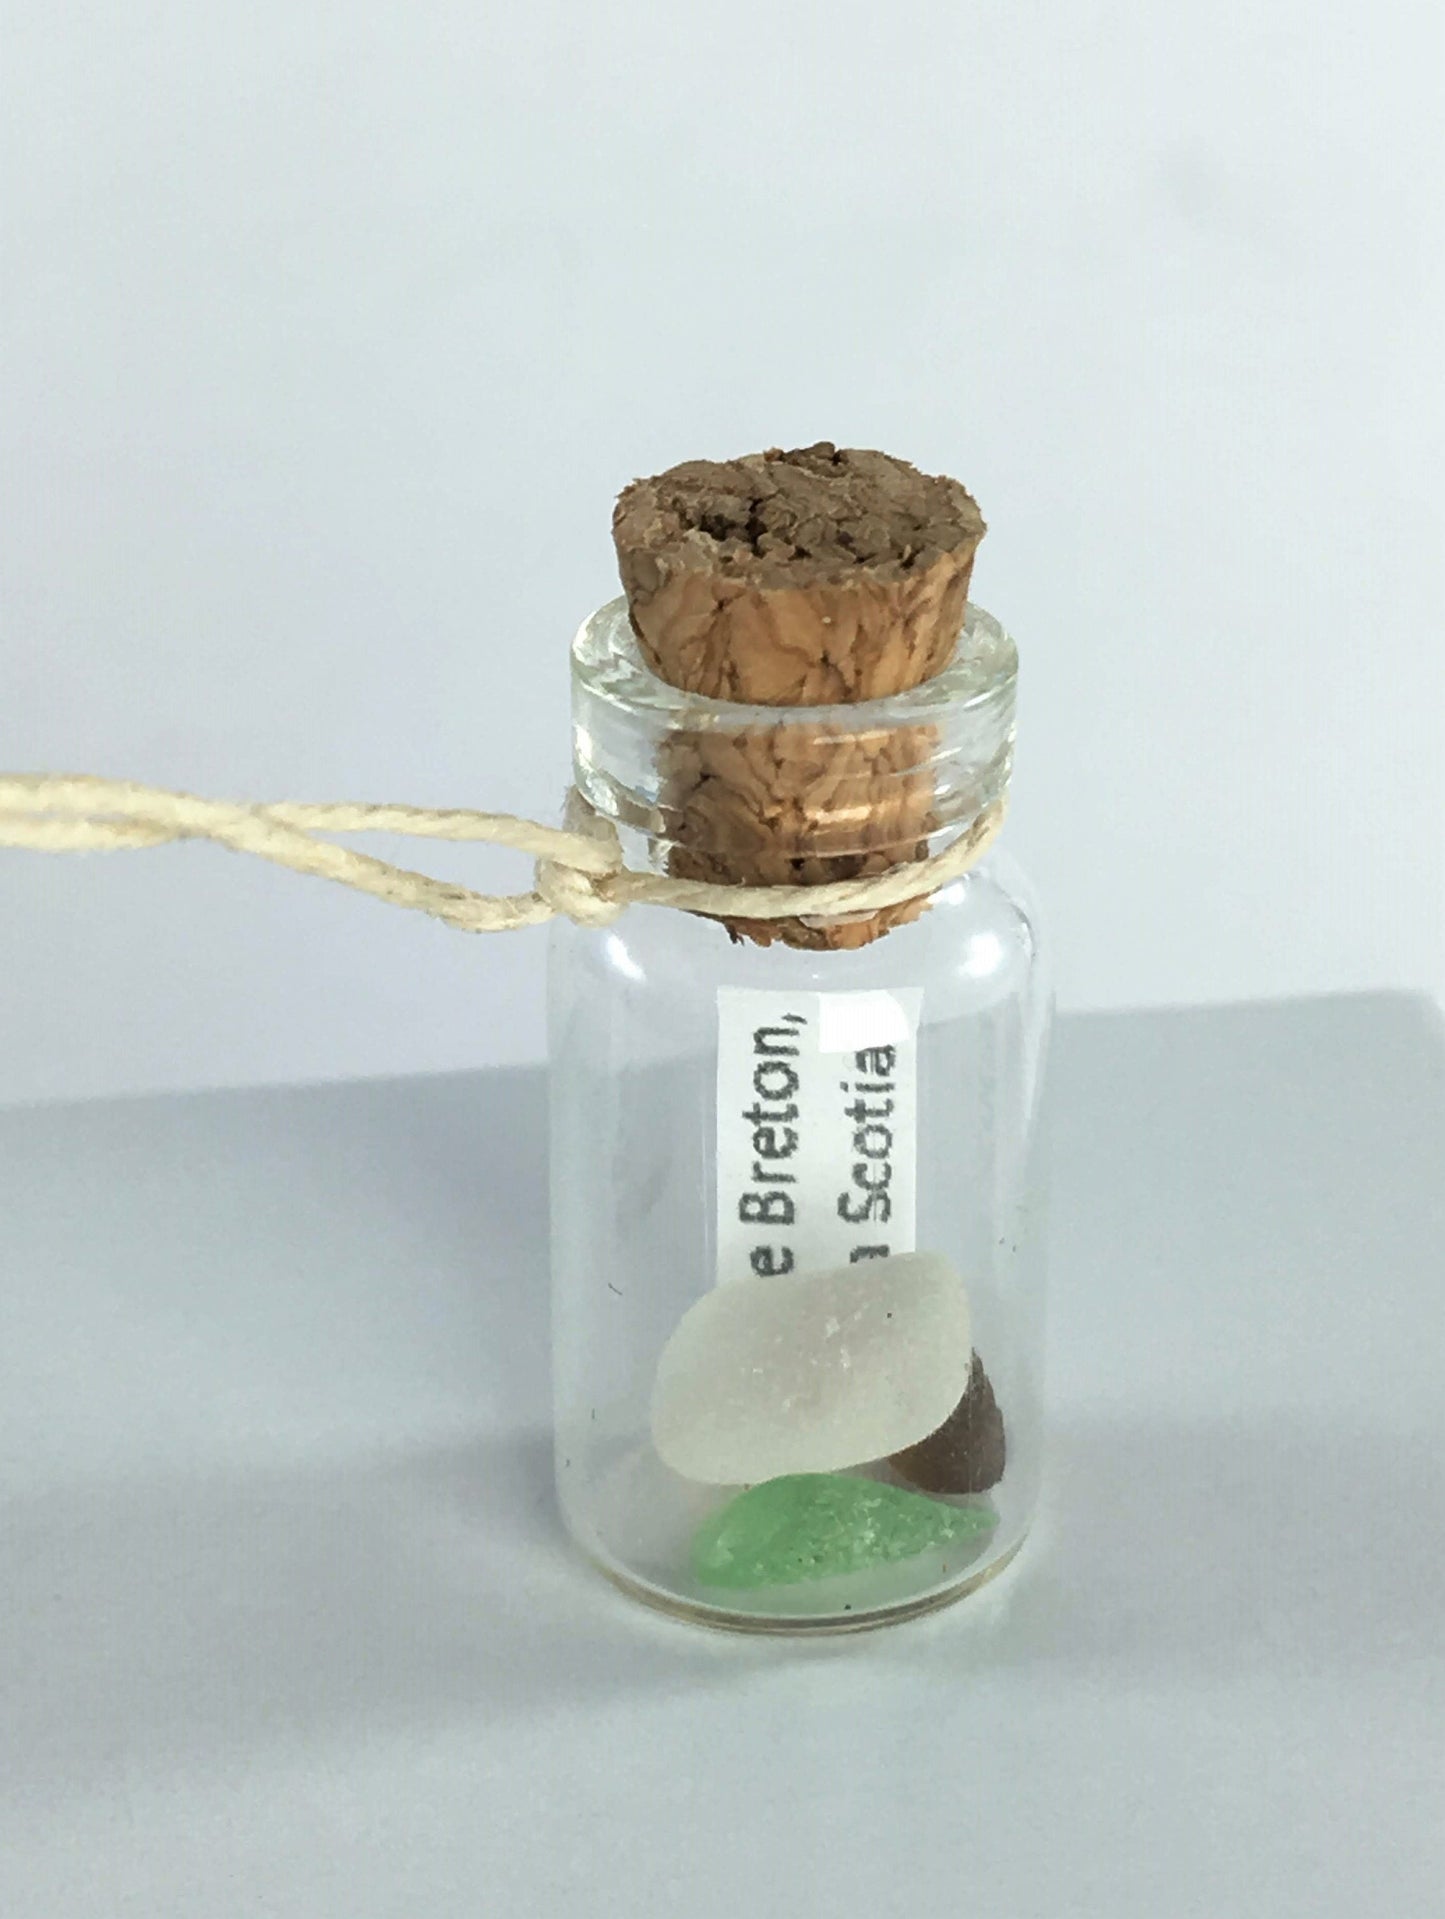 Message in a Mini Bottle with Sea Glass from Cape Breton, Nova Scotia, Canada